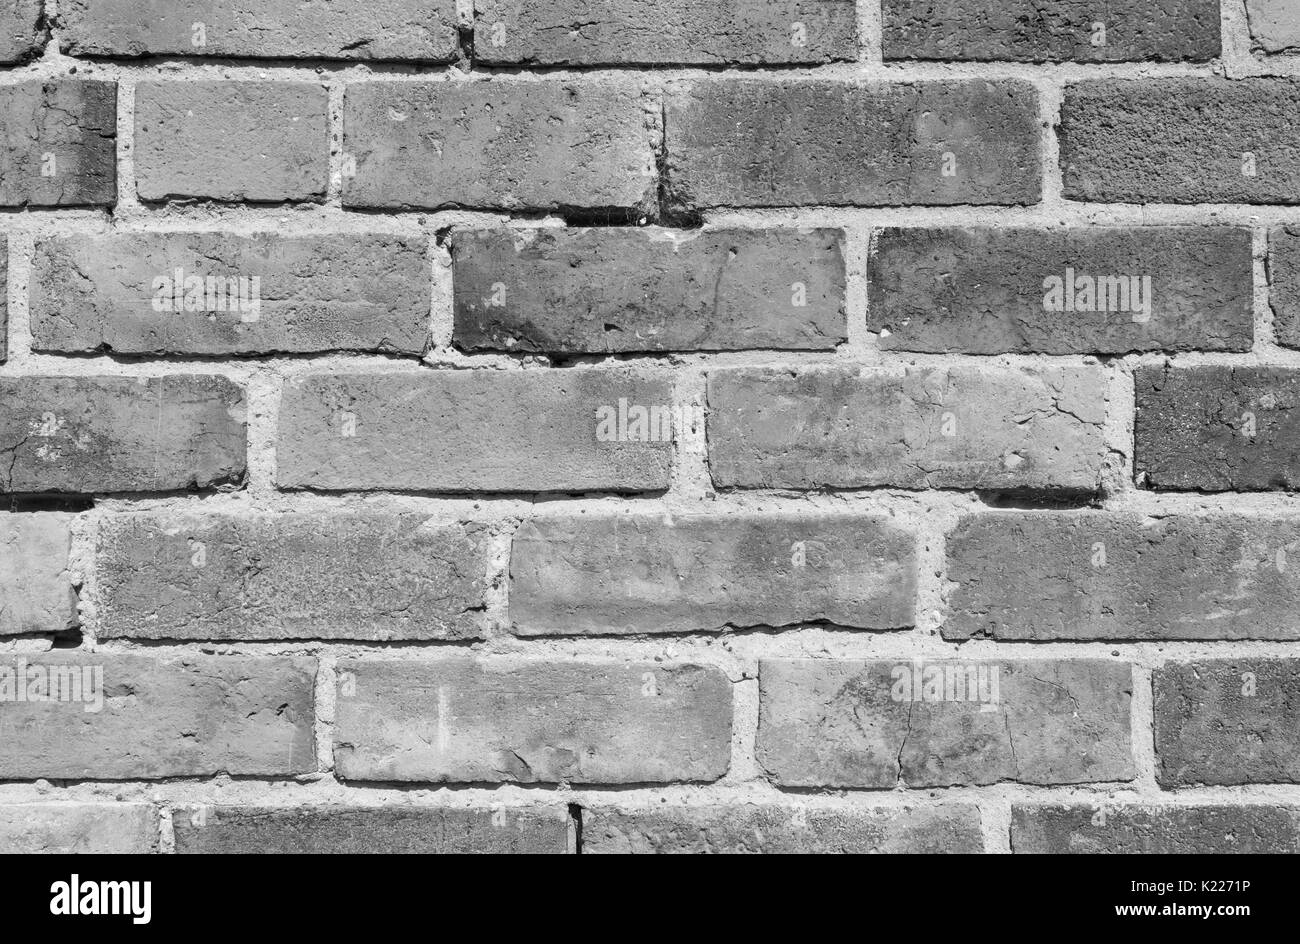 stone wall brick texture Stock Photo